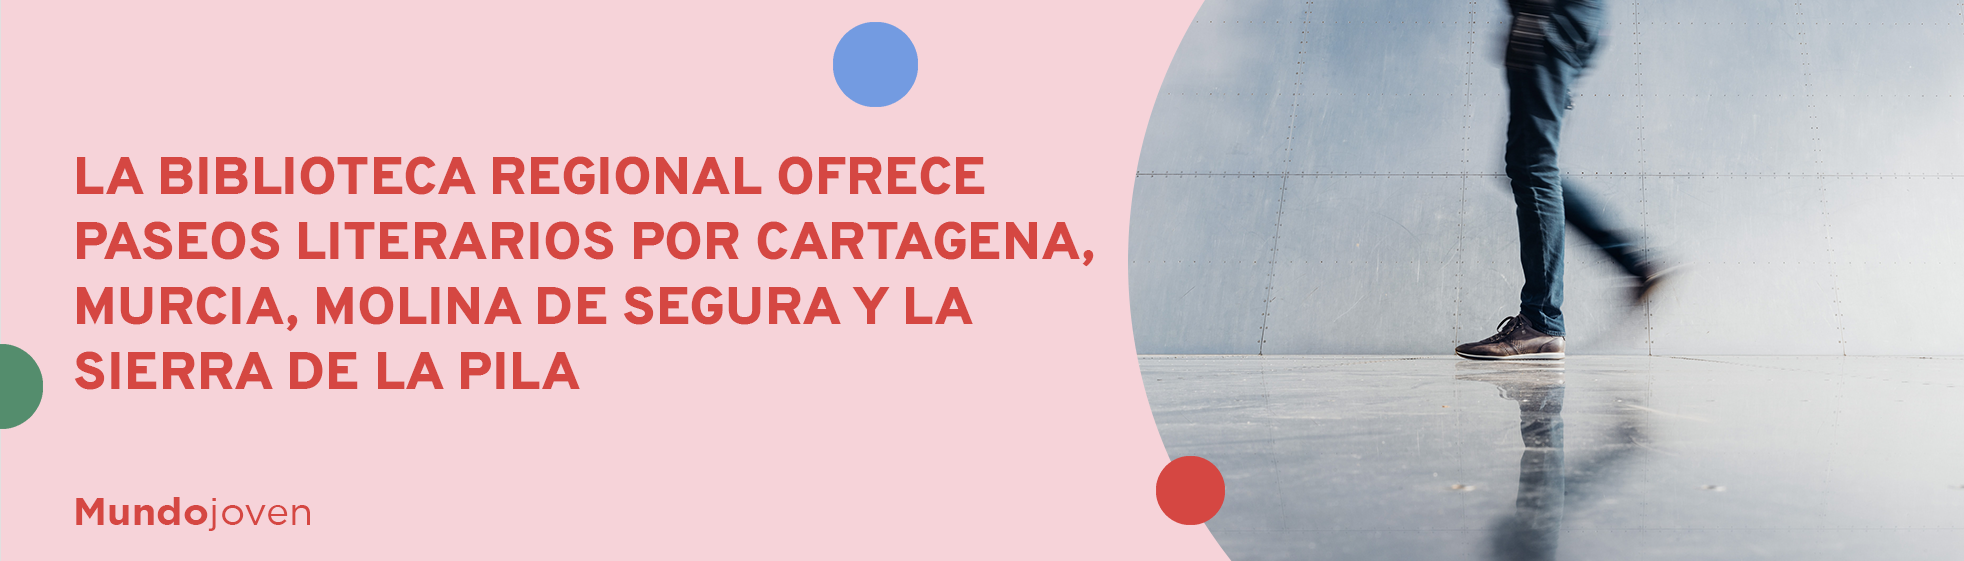 La Biblioteca Regional ofrece paseos literarios por Cartagena, Murcia, Molina de Segura y la Sierra de la Pila